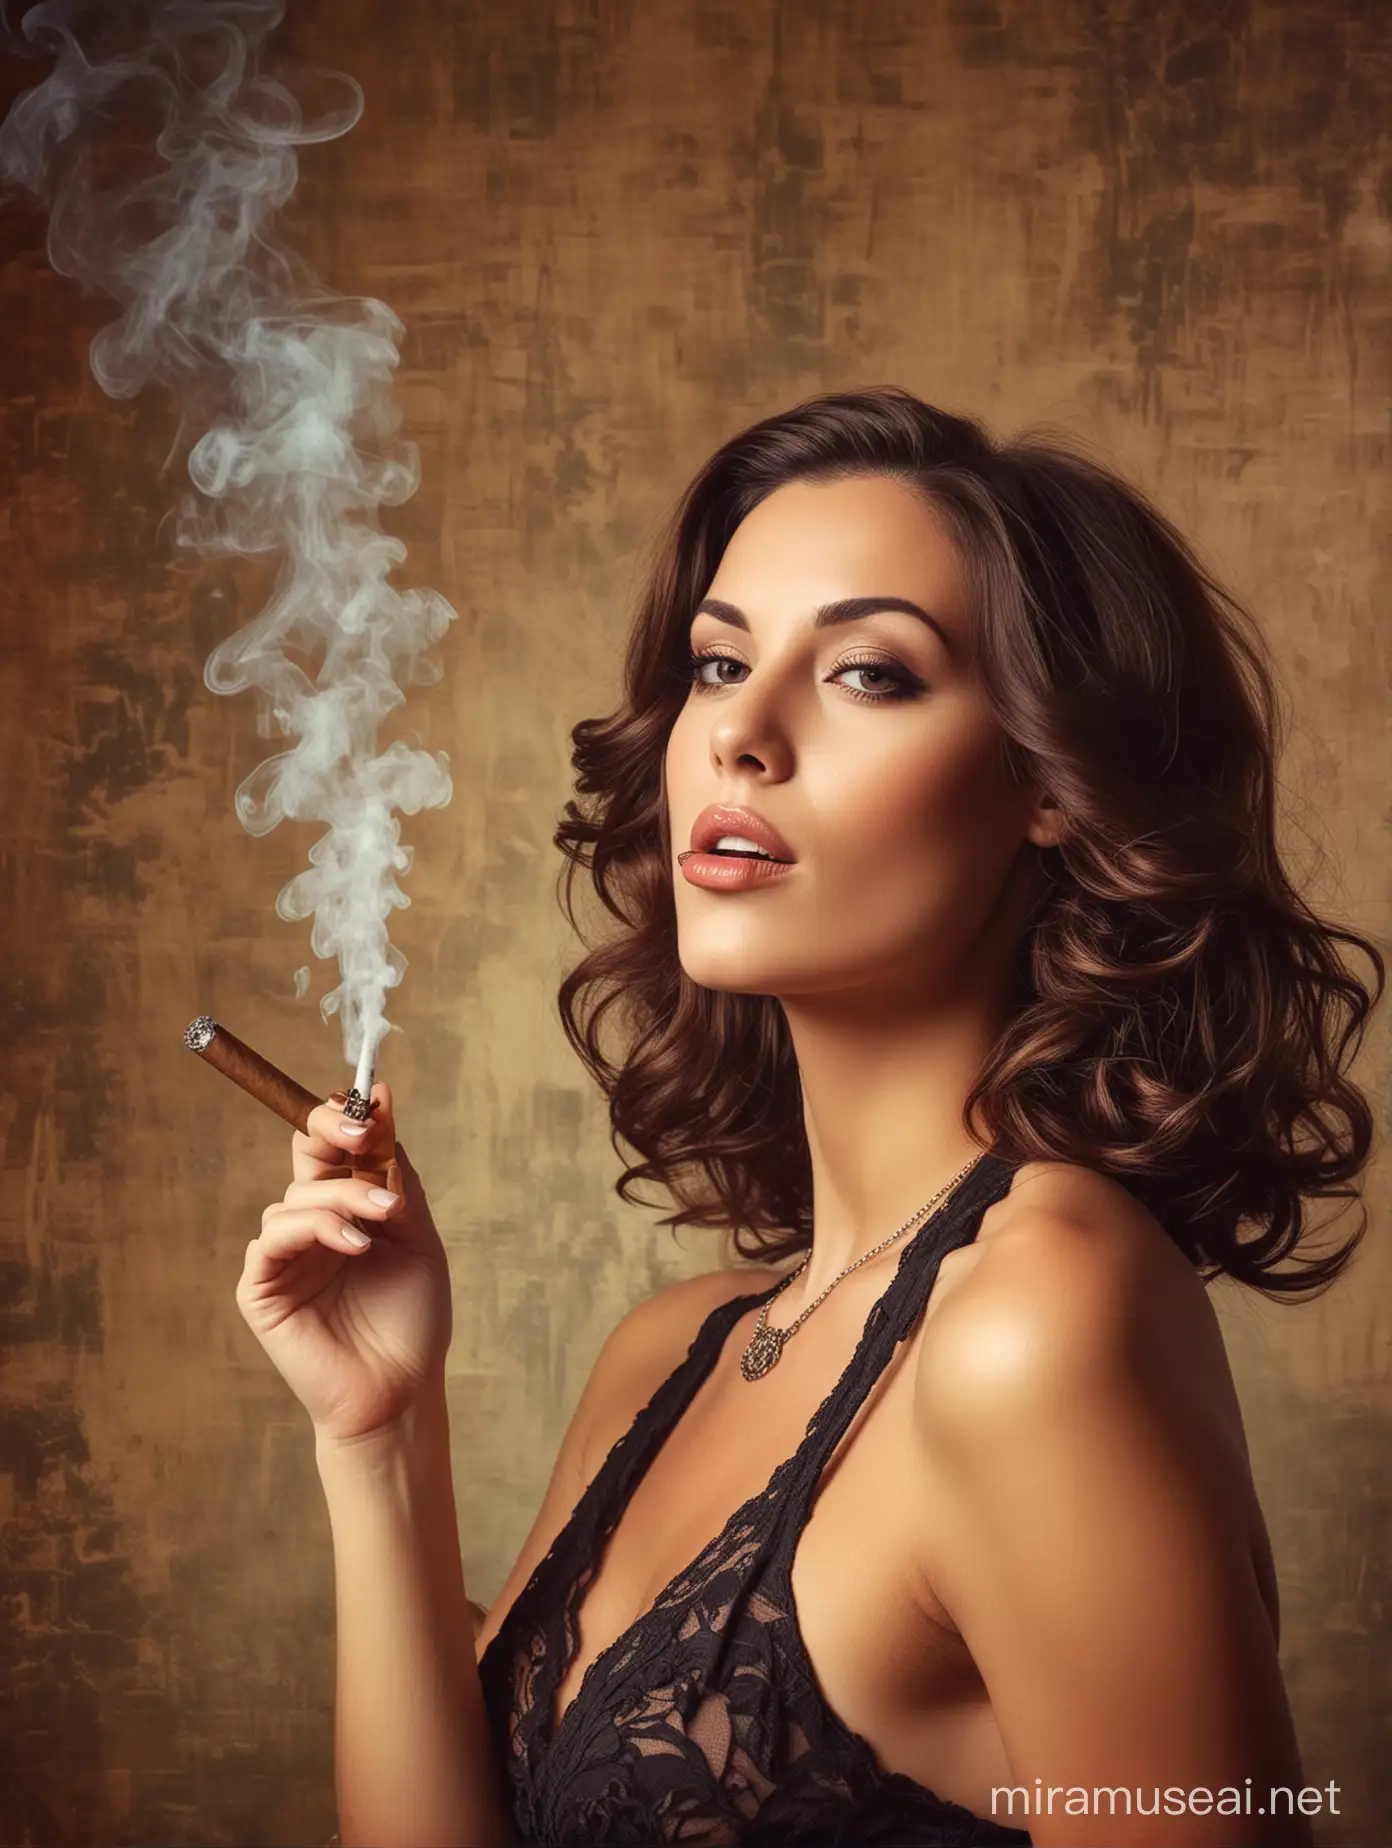 Elegant Women Smoking Cigars in Vintage Atmosphere